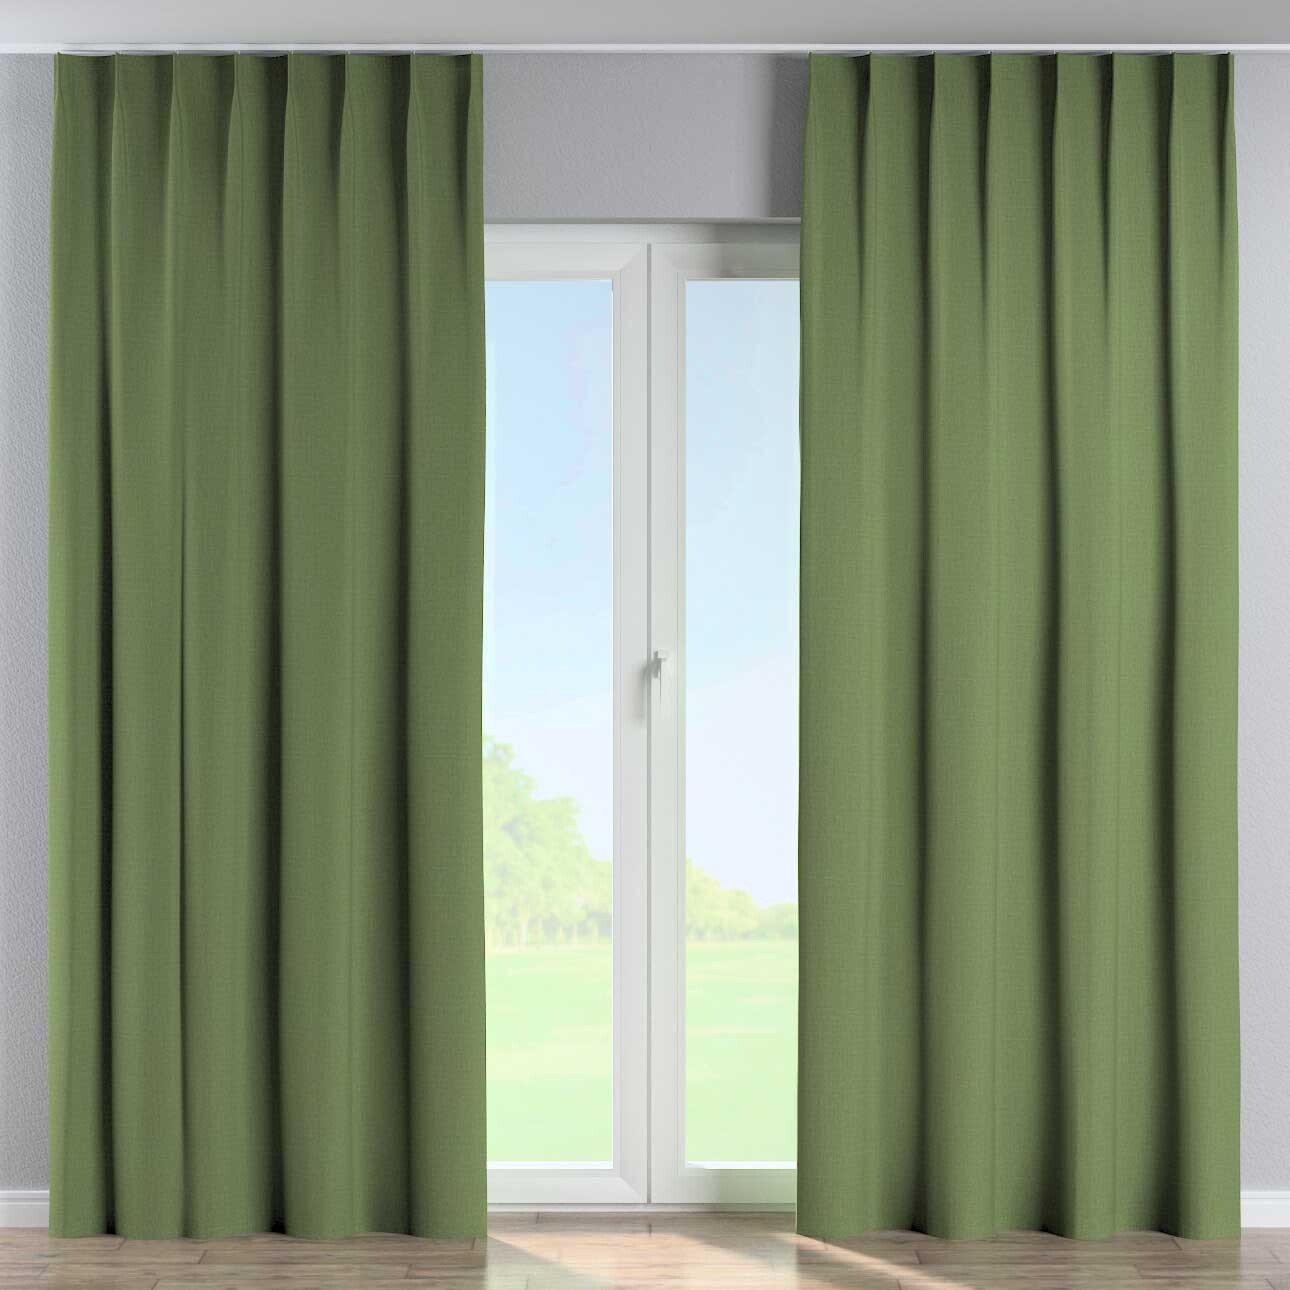 Vorhang mit flämischen 1-er Falten, grün, Blackout 300 cm (269-15) günstig online kaufen